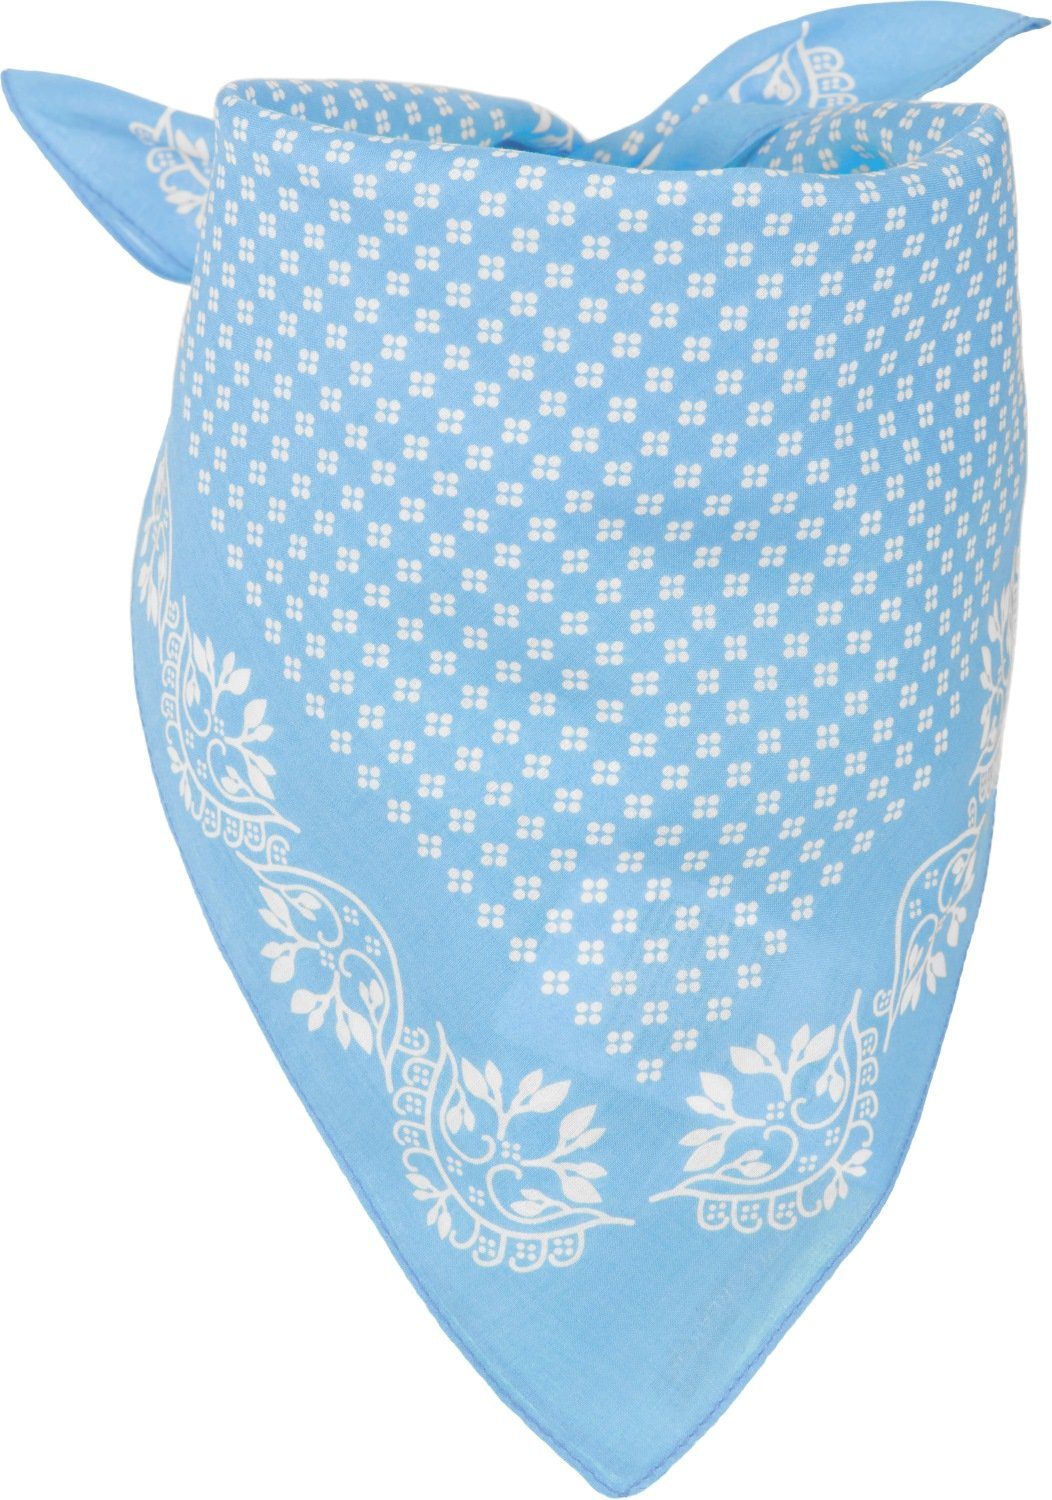 styleBREAKER Bandana, (1-St), Baumwolle Dreieckstuch mit Blümchen Muster Hellblau-Weiß